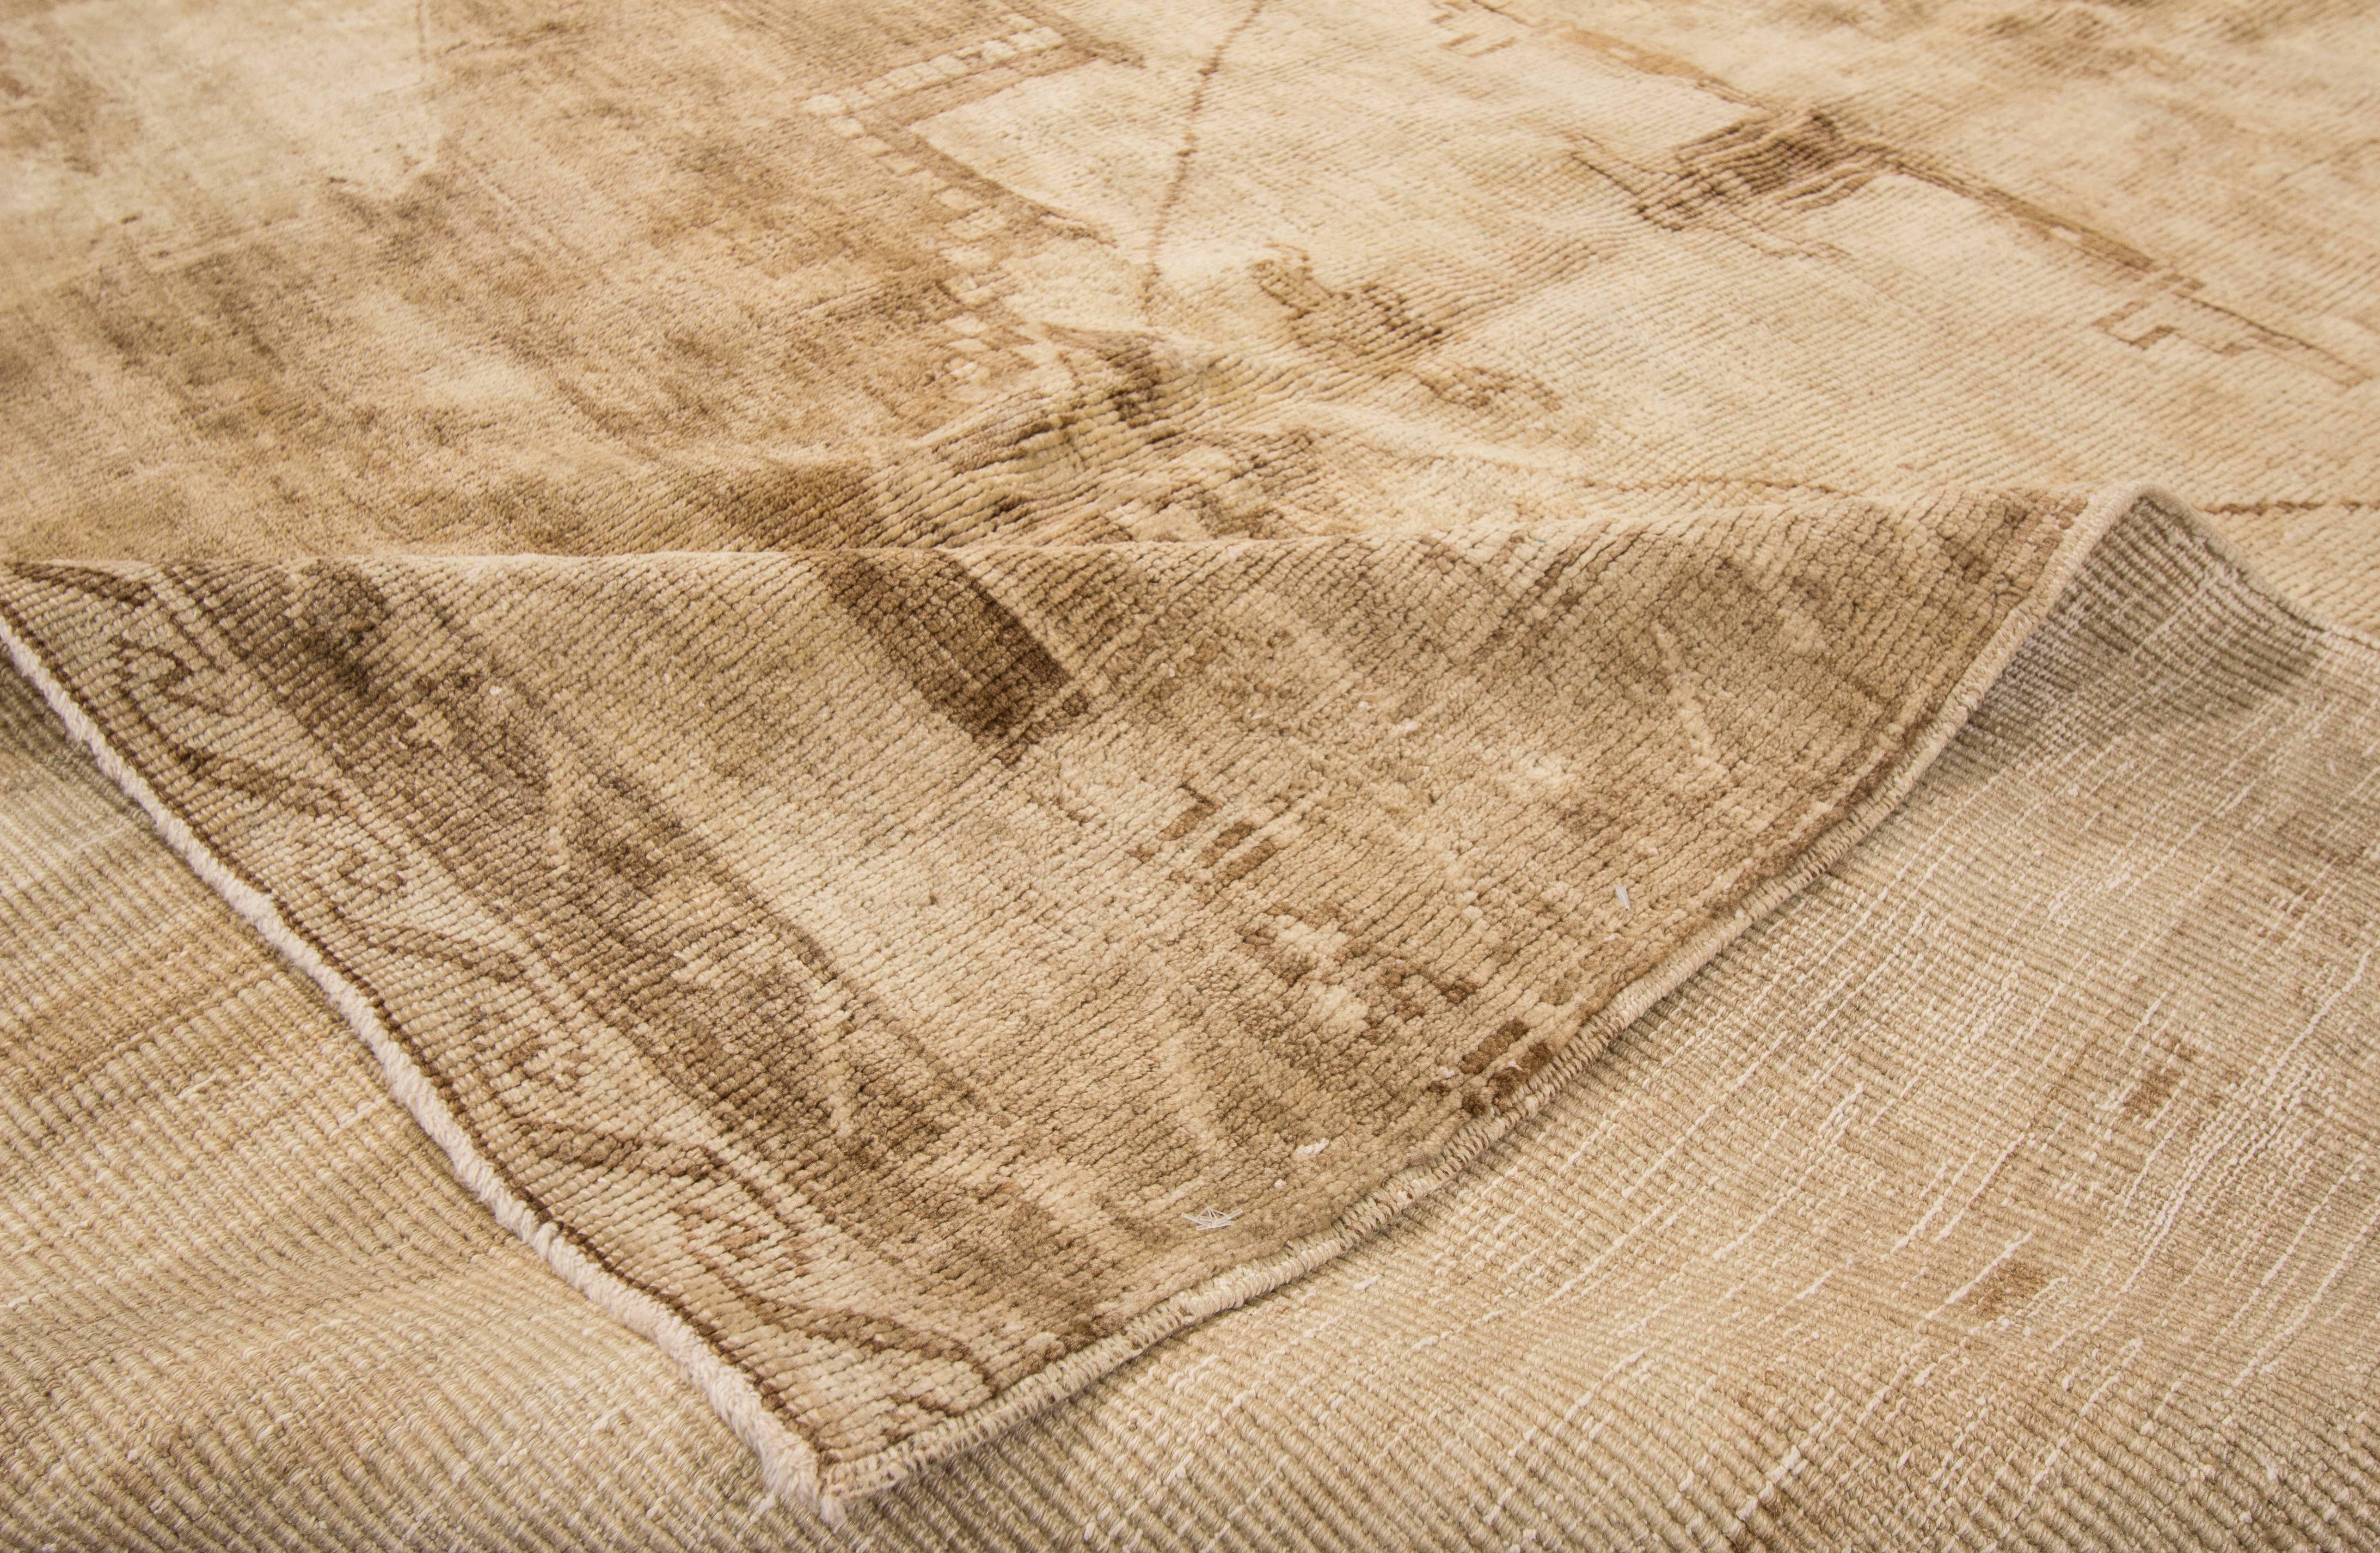 Ce magnifique tapis antique Khotan à motifs noués à la main rendra votre sol splendide. Cette collection est réalisée en laine. Ses mesures sont : 6'.5 x 9'.9
Ce tapis antique de Khotan a été fabriqué au Turkestan.
 